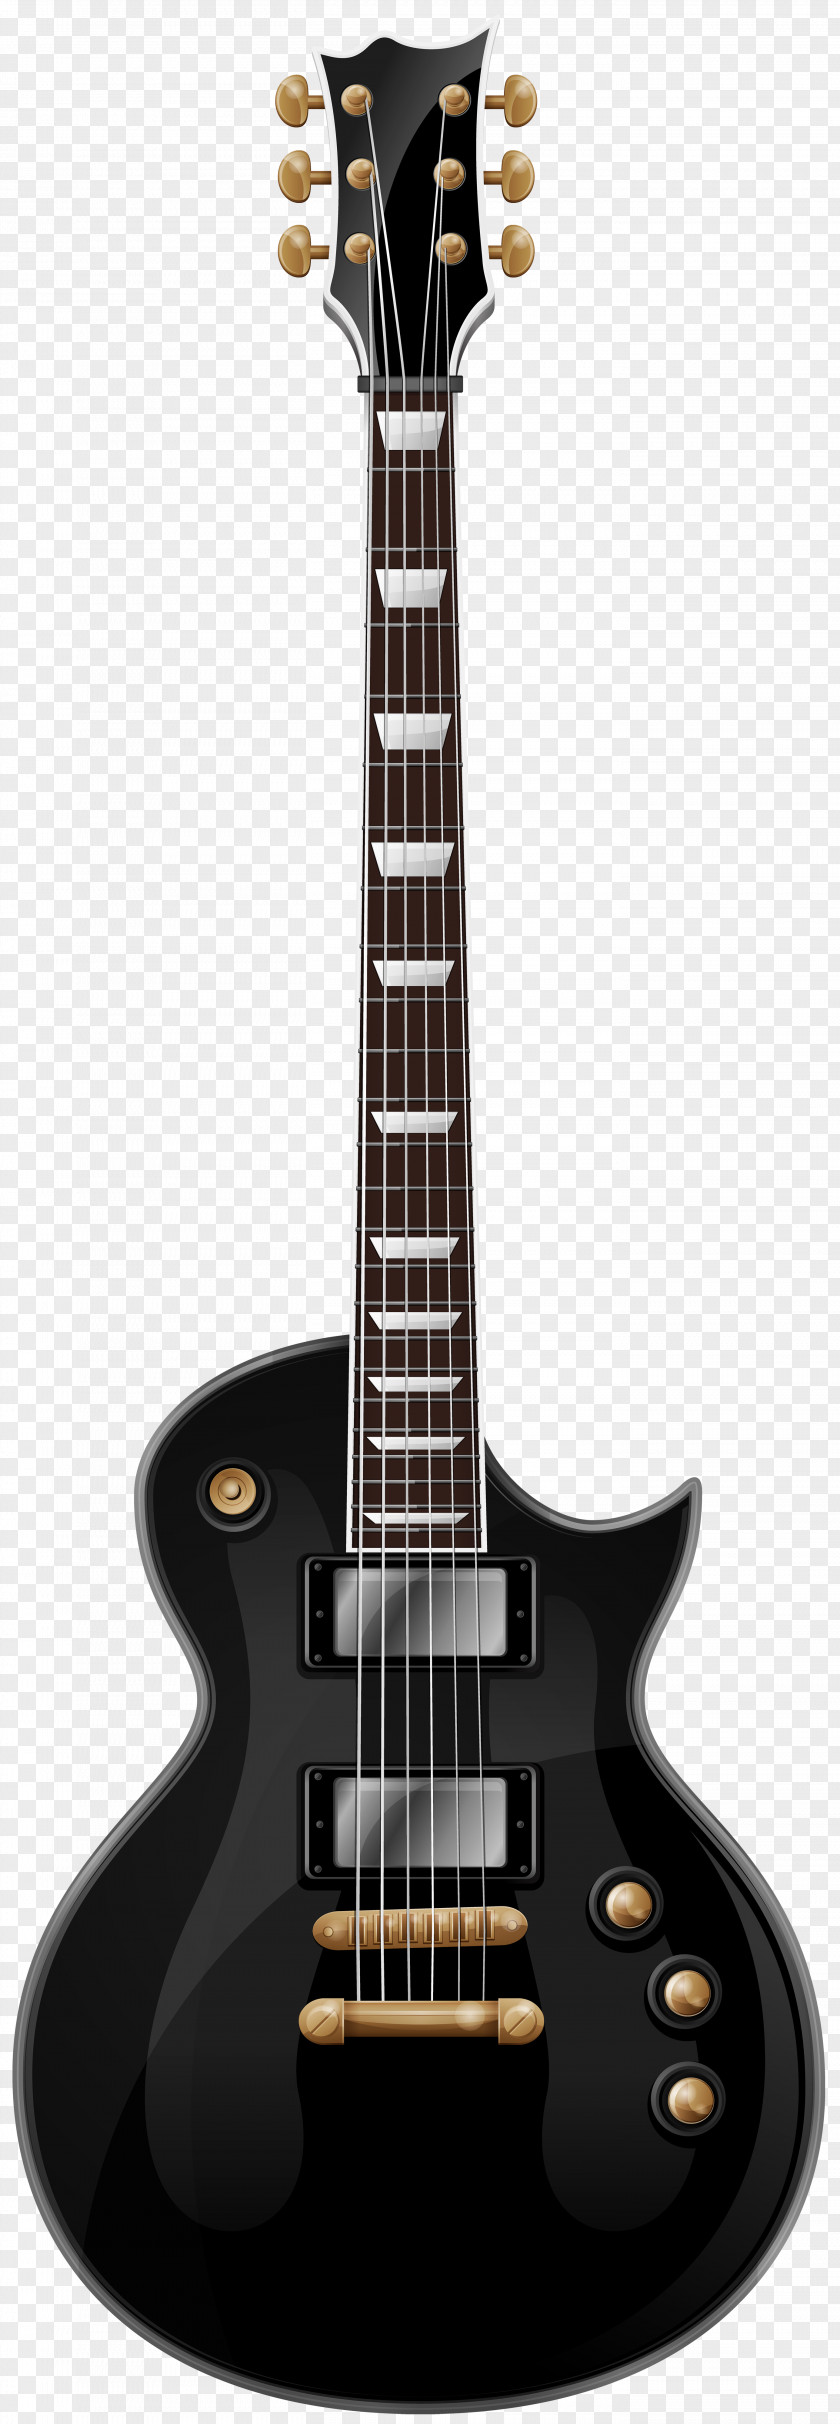 Black Guitar Clip Art Image ESP LTD EC-1000 EMG 81 MH-1000 Electric PNG